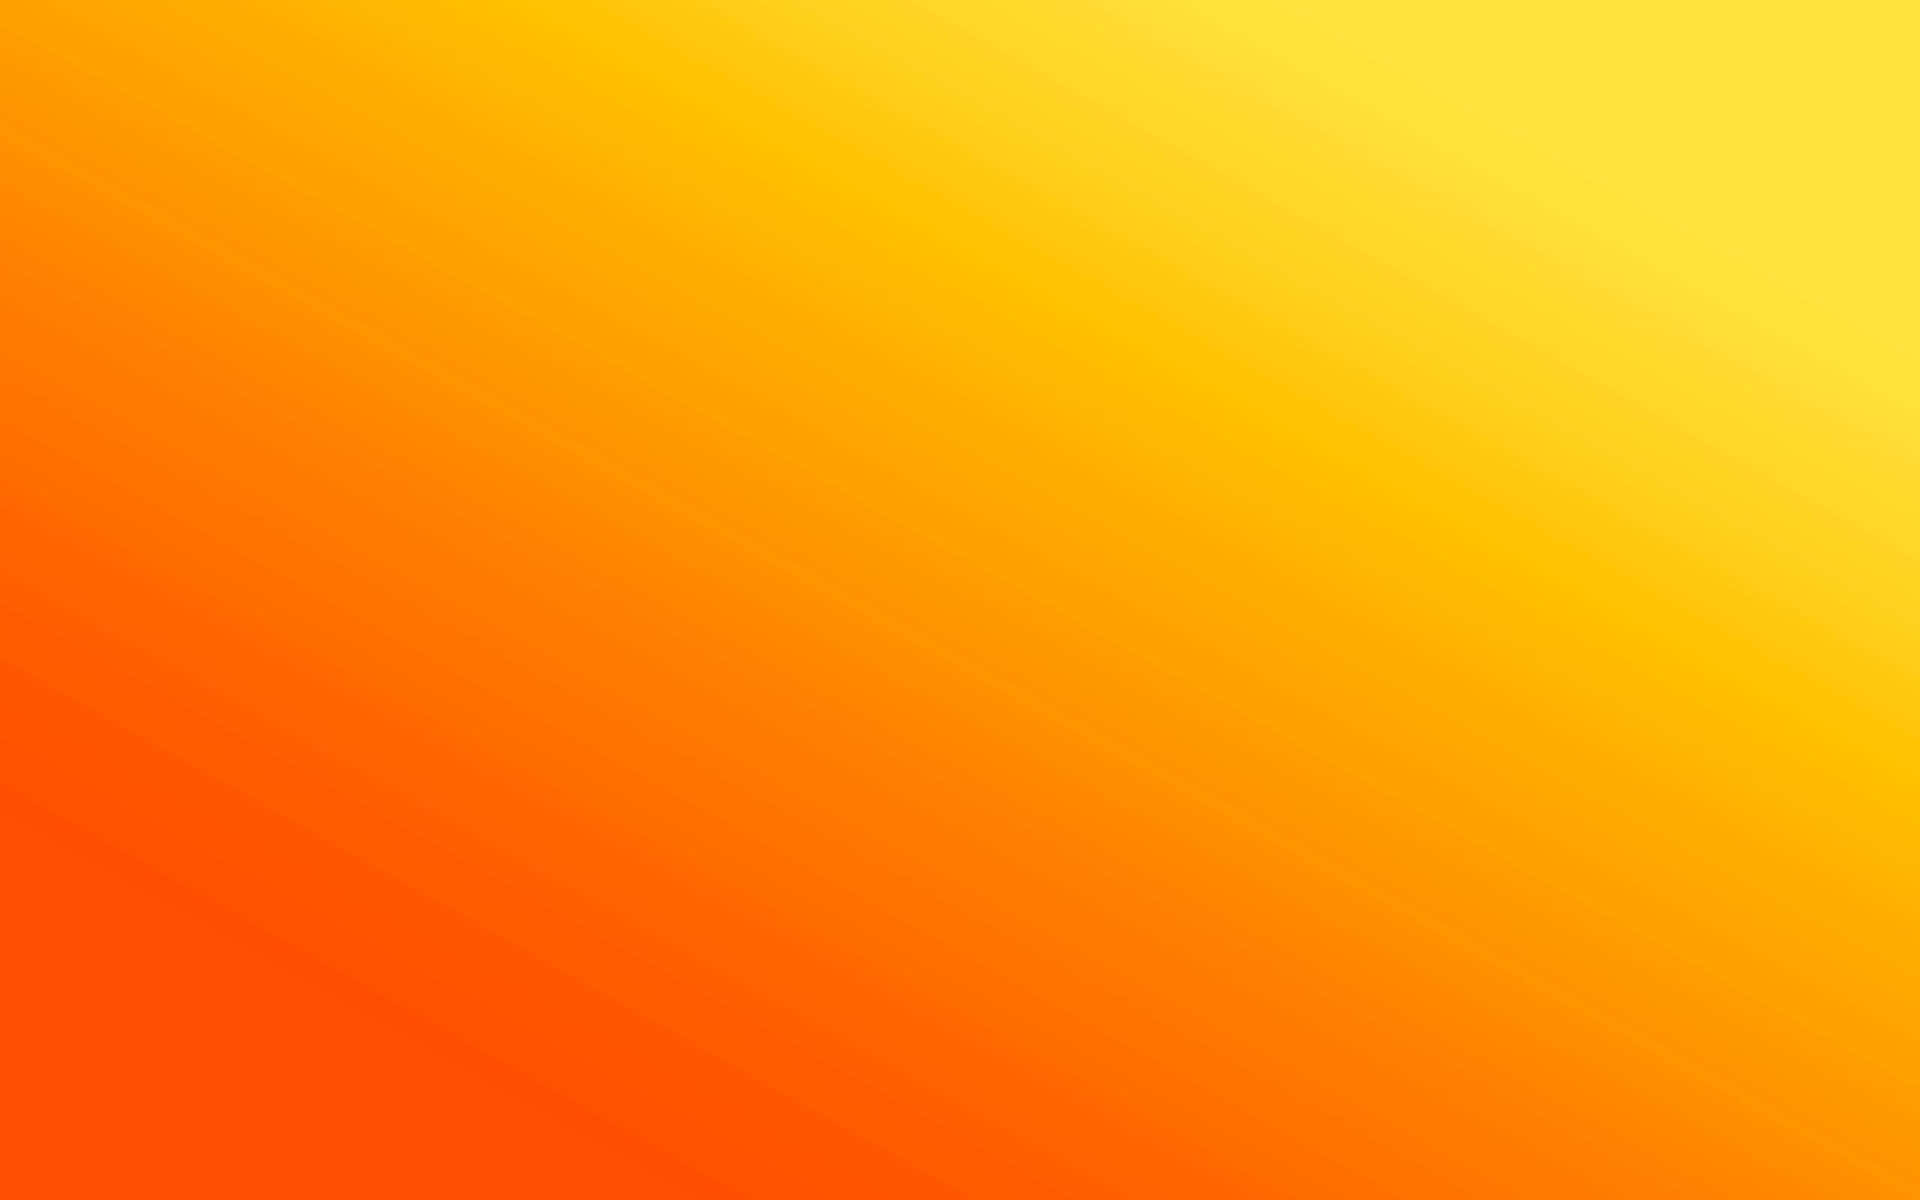 Gradient Yellow Orange Vector Art Background